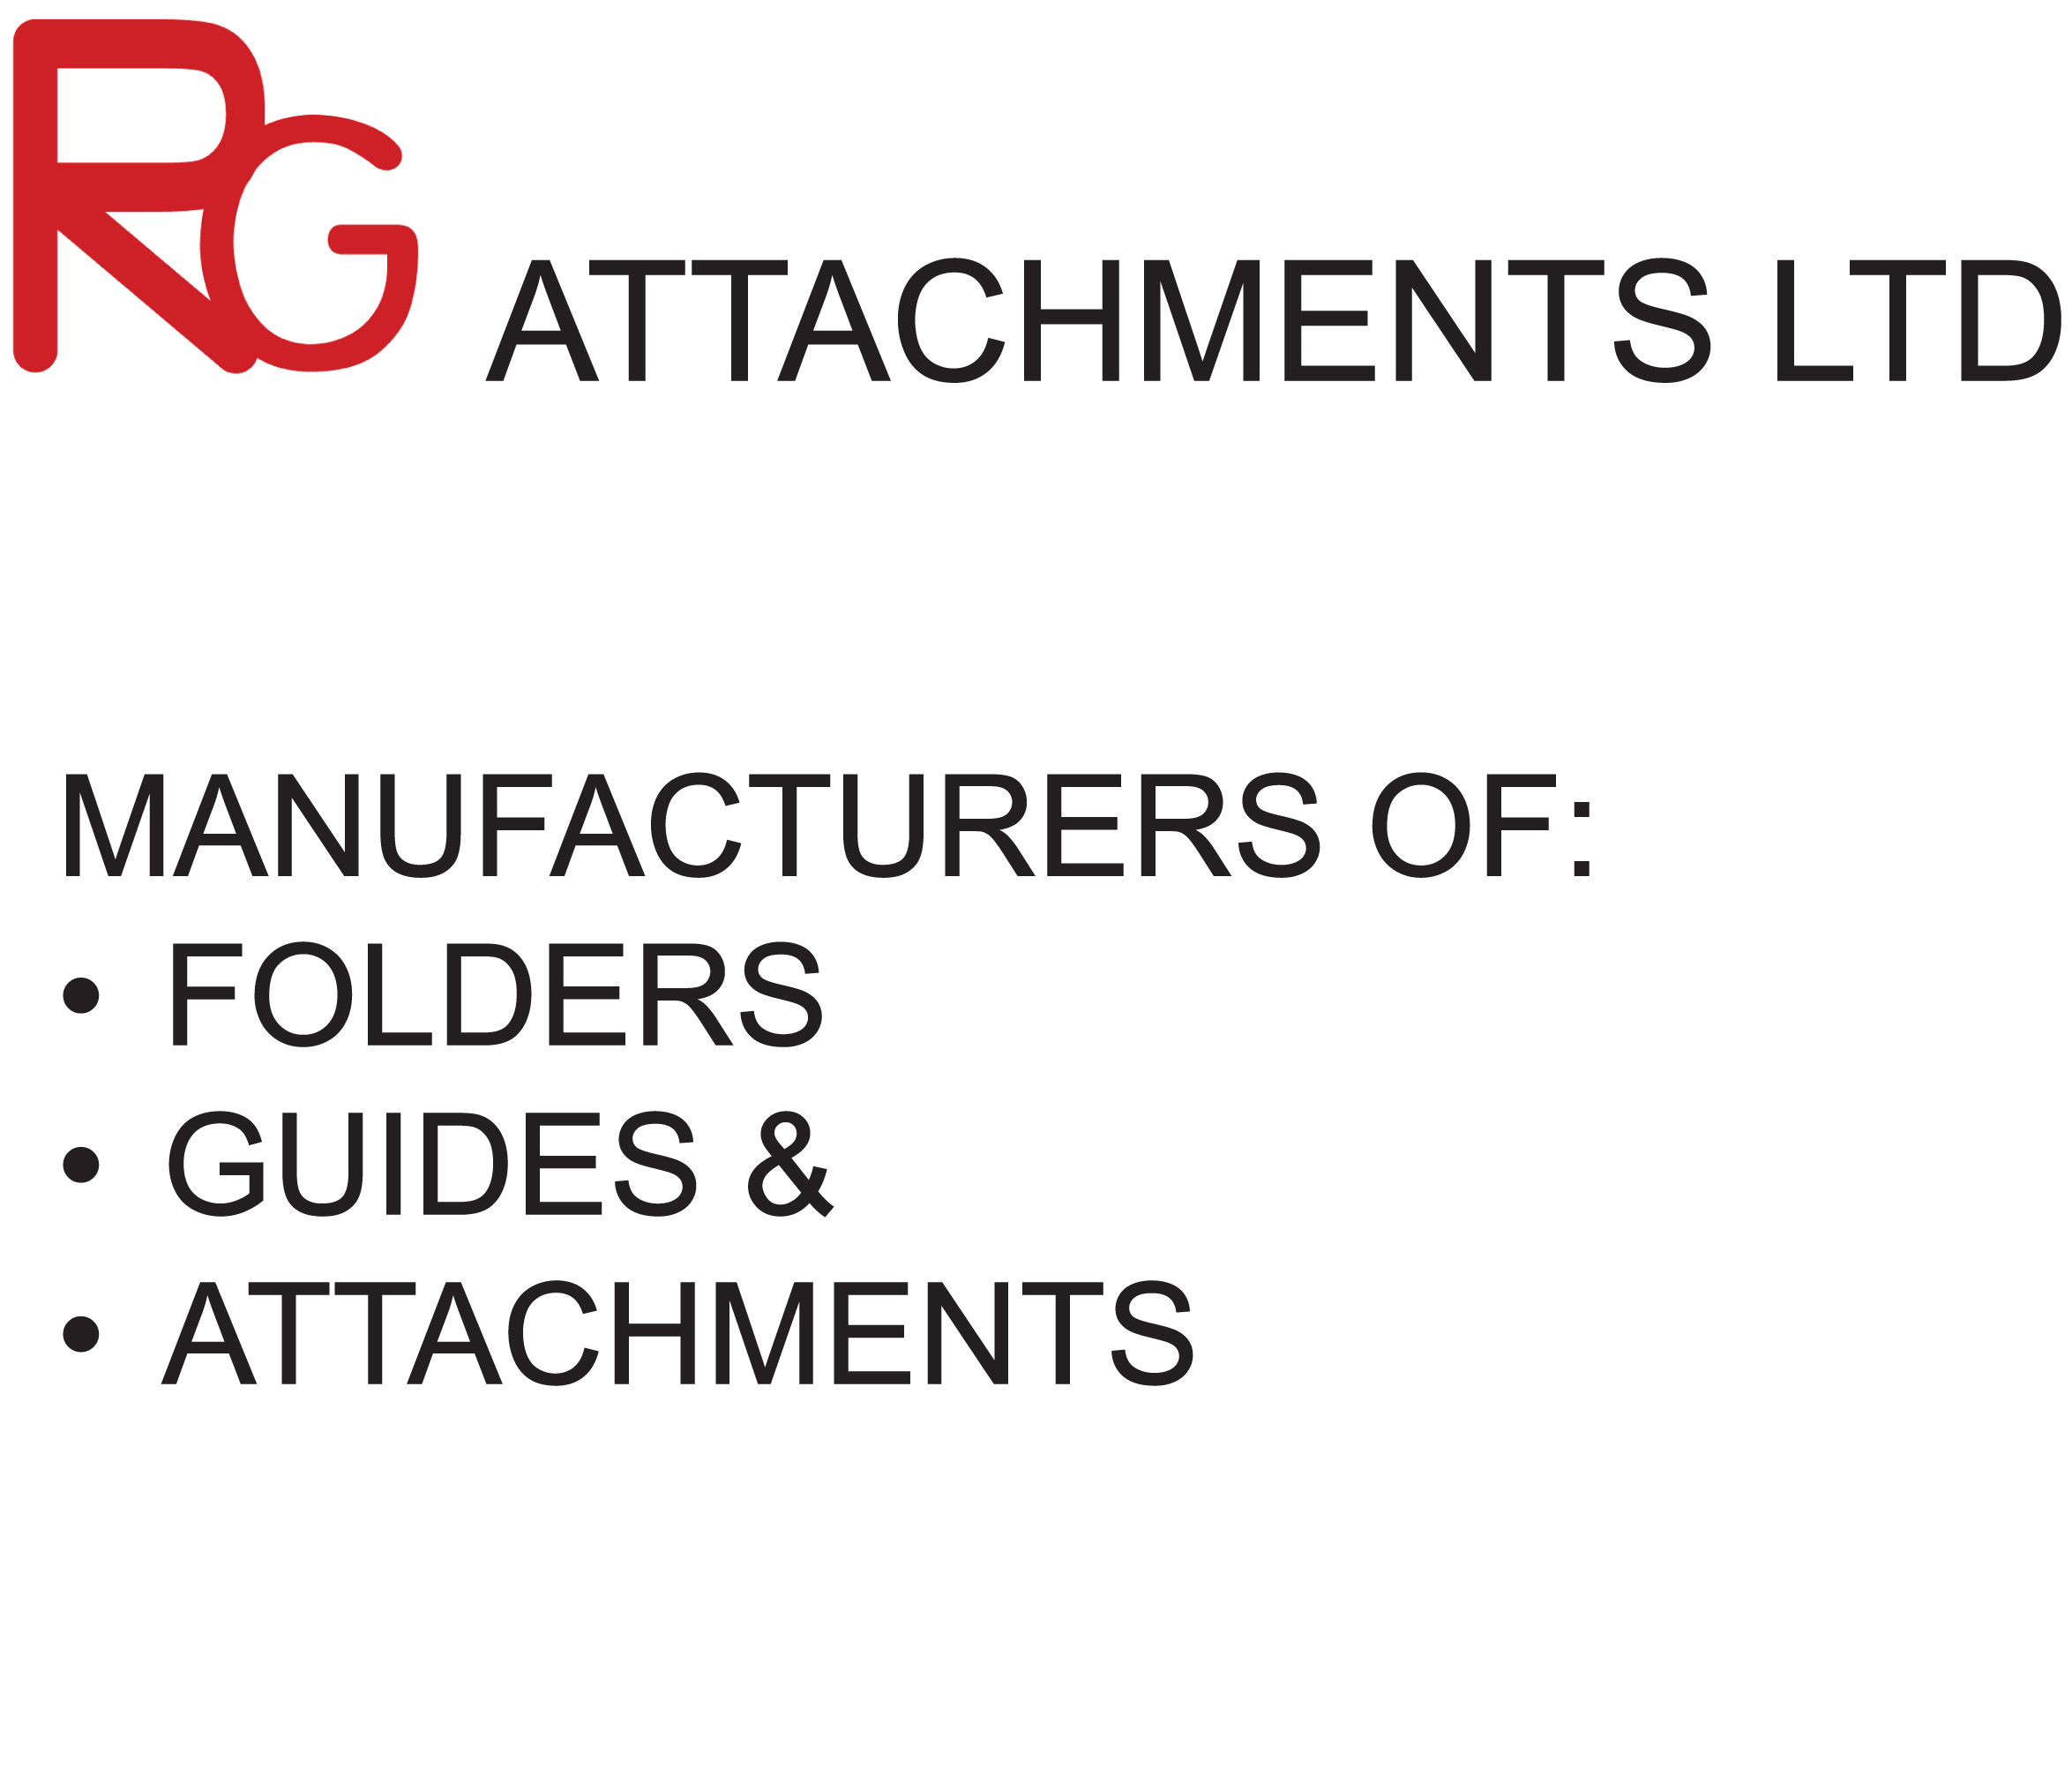 RG Attachments LTD